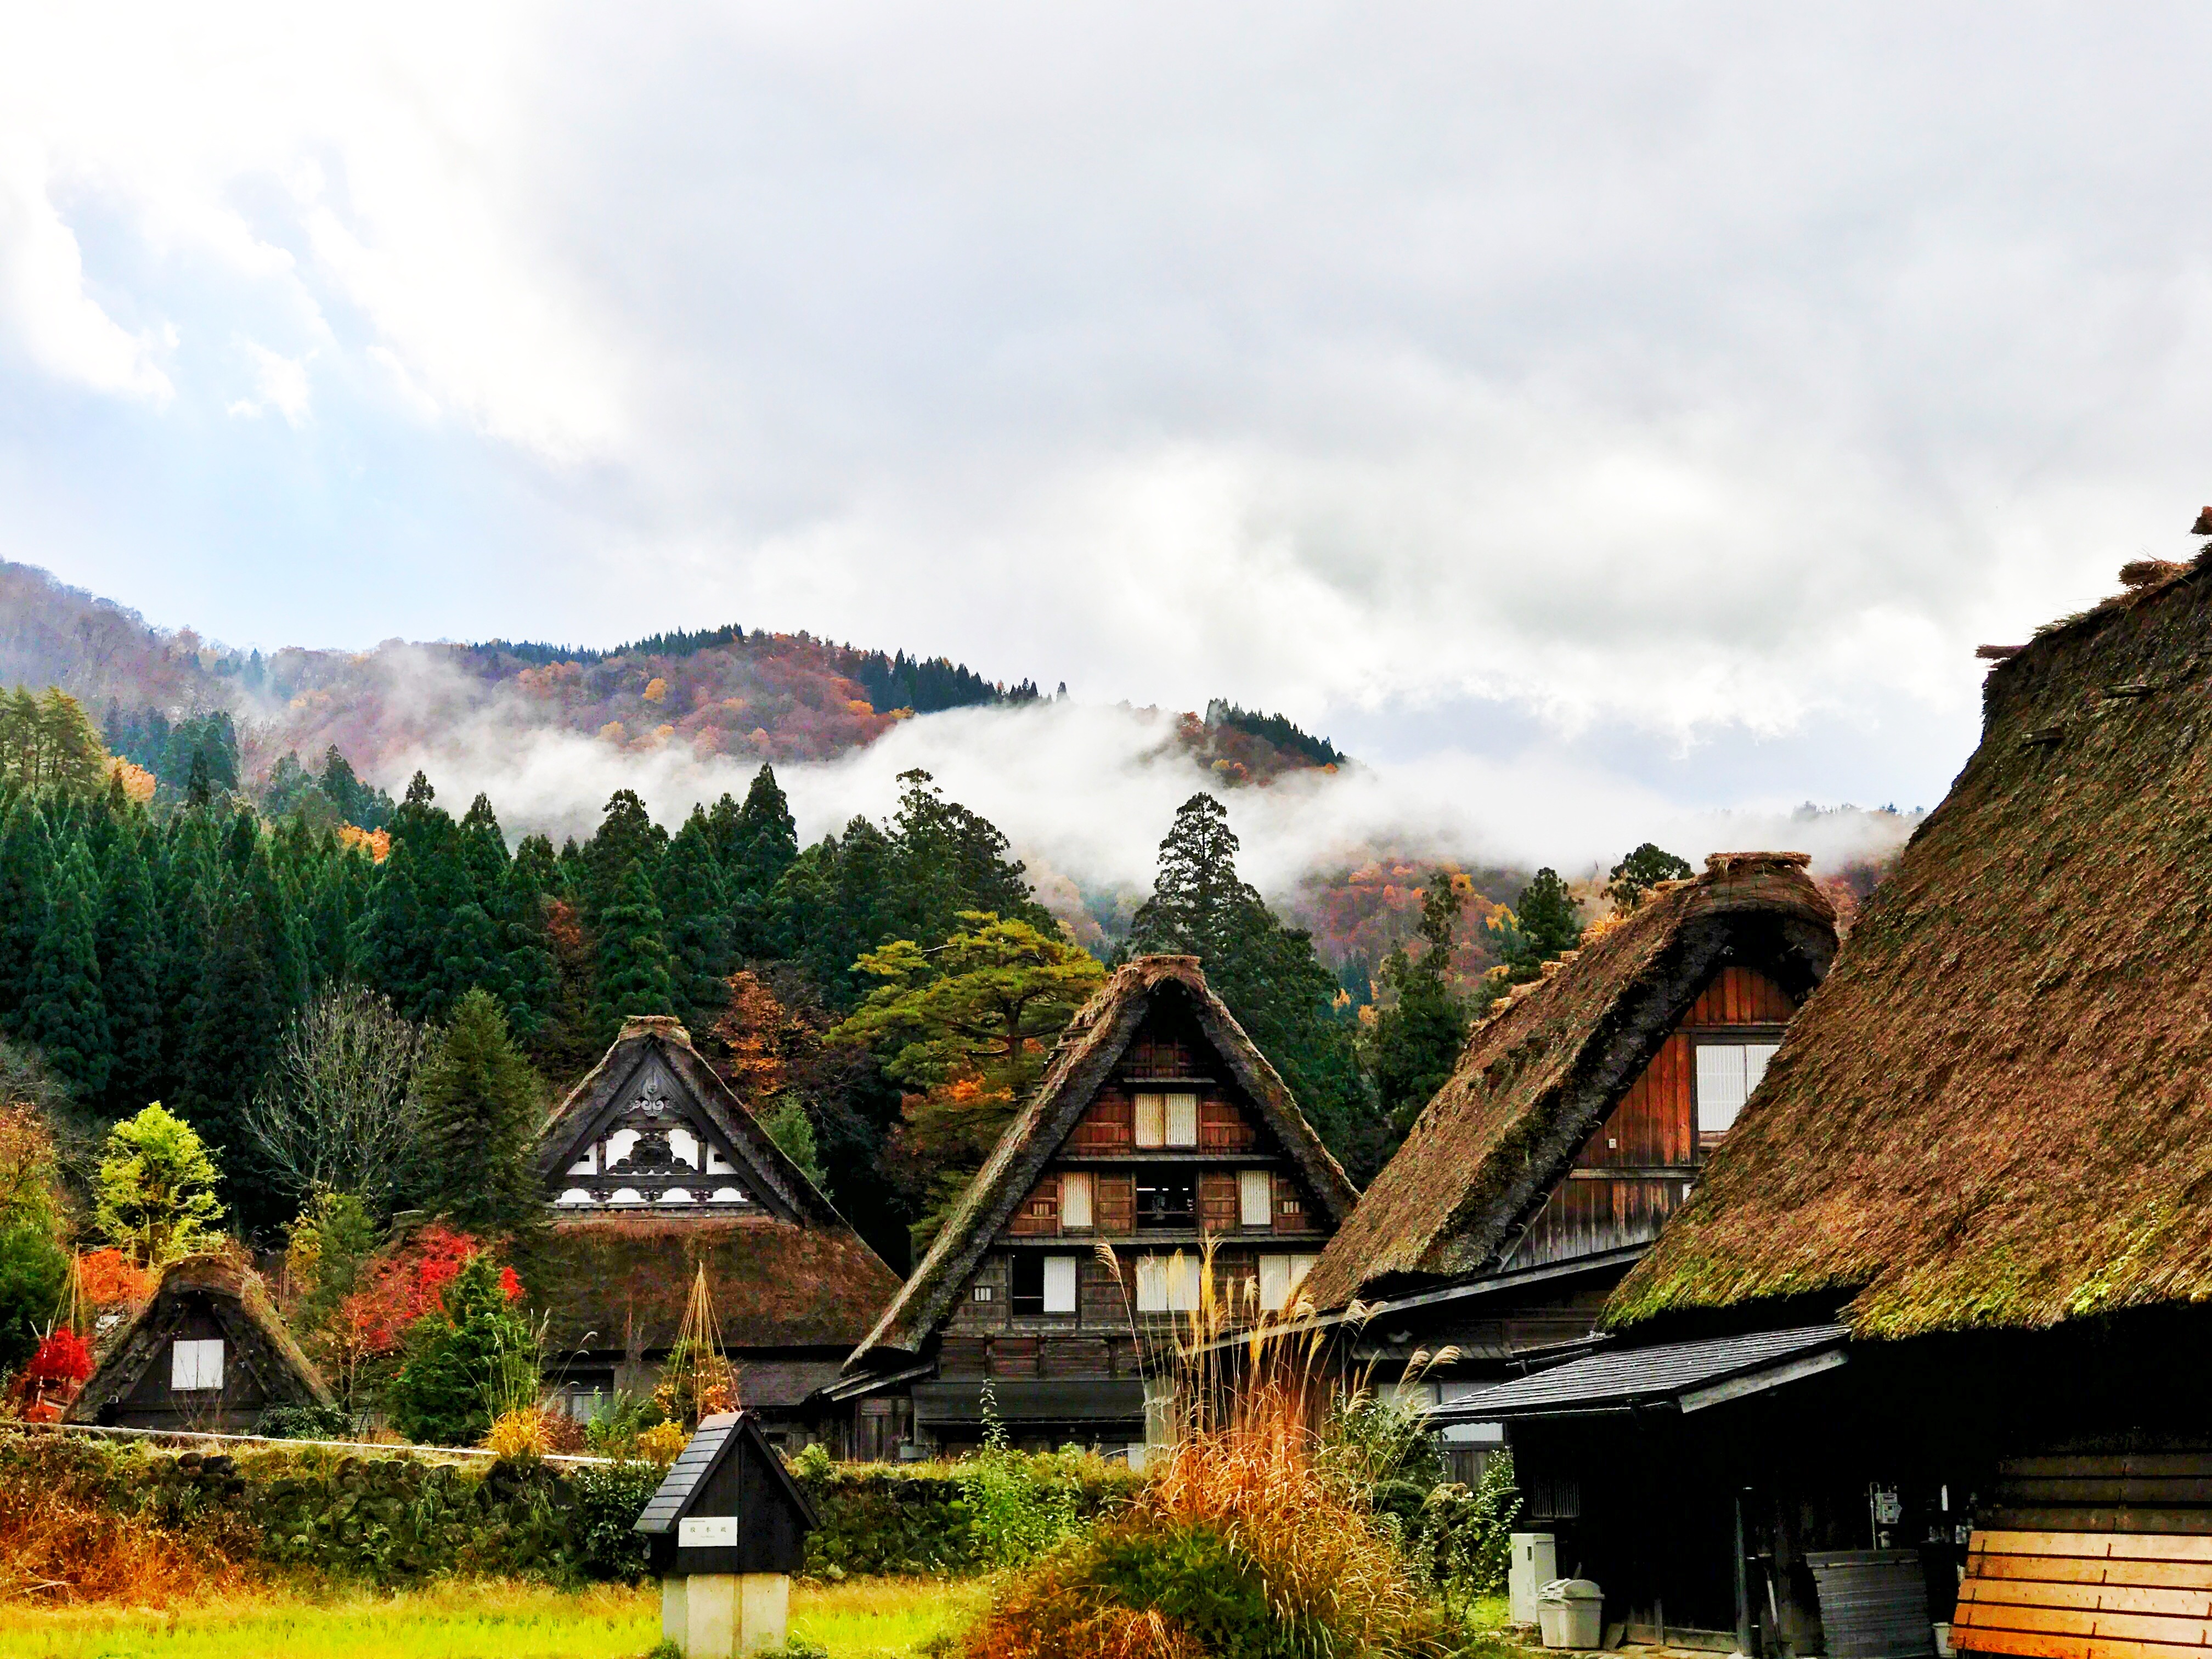 japan, cities, houses, trees, mountains, shirakawa 1080p